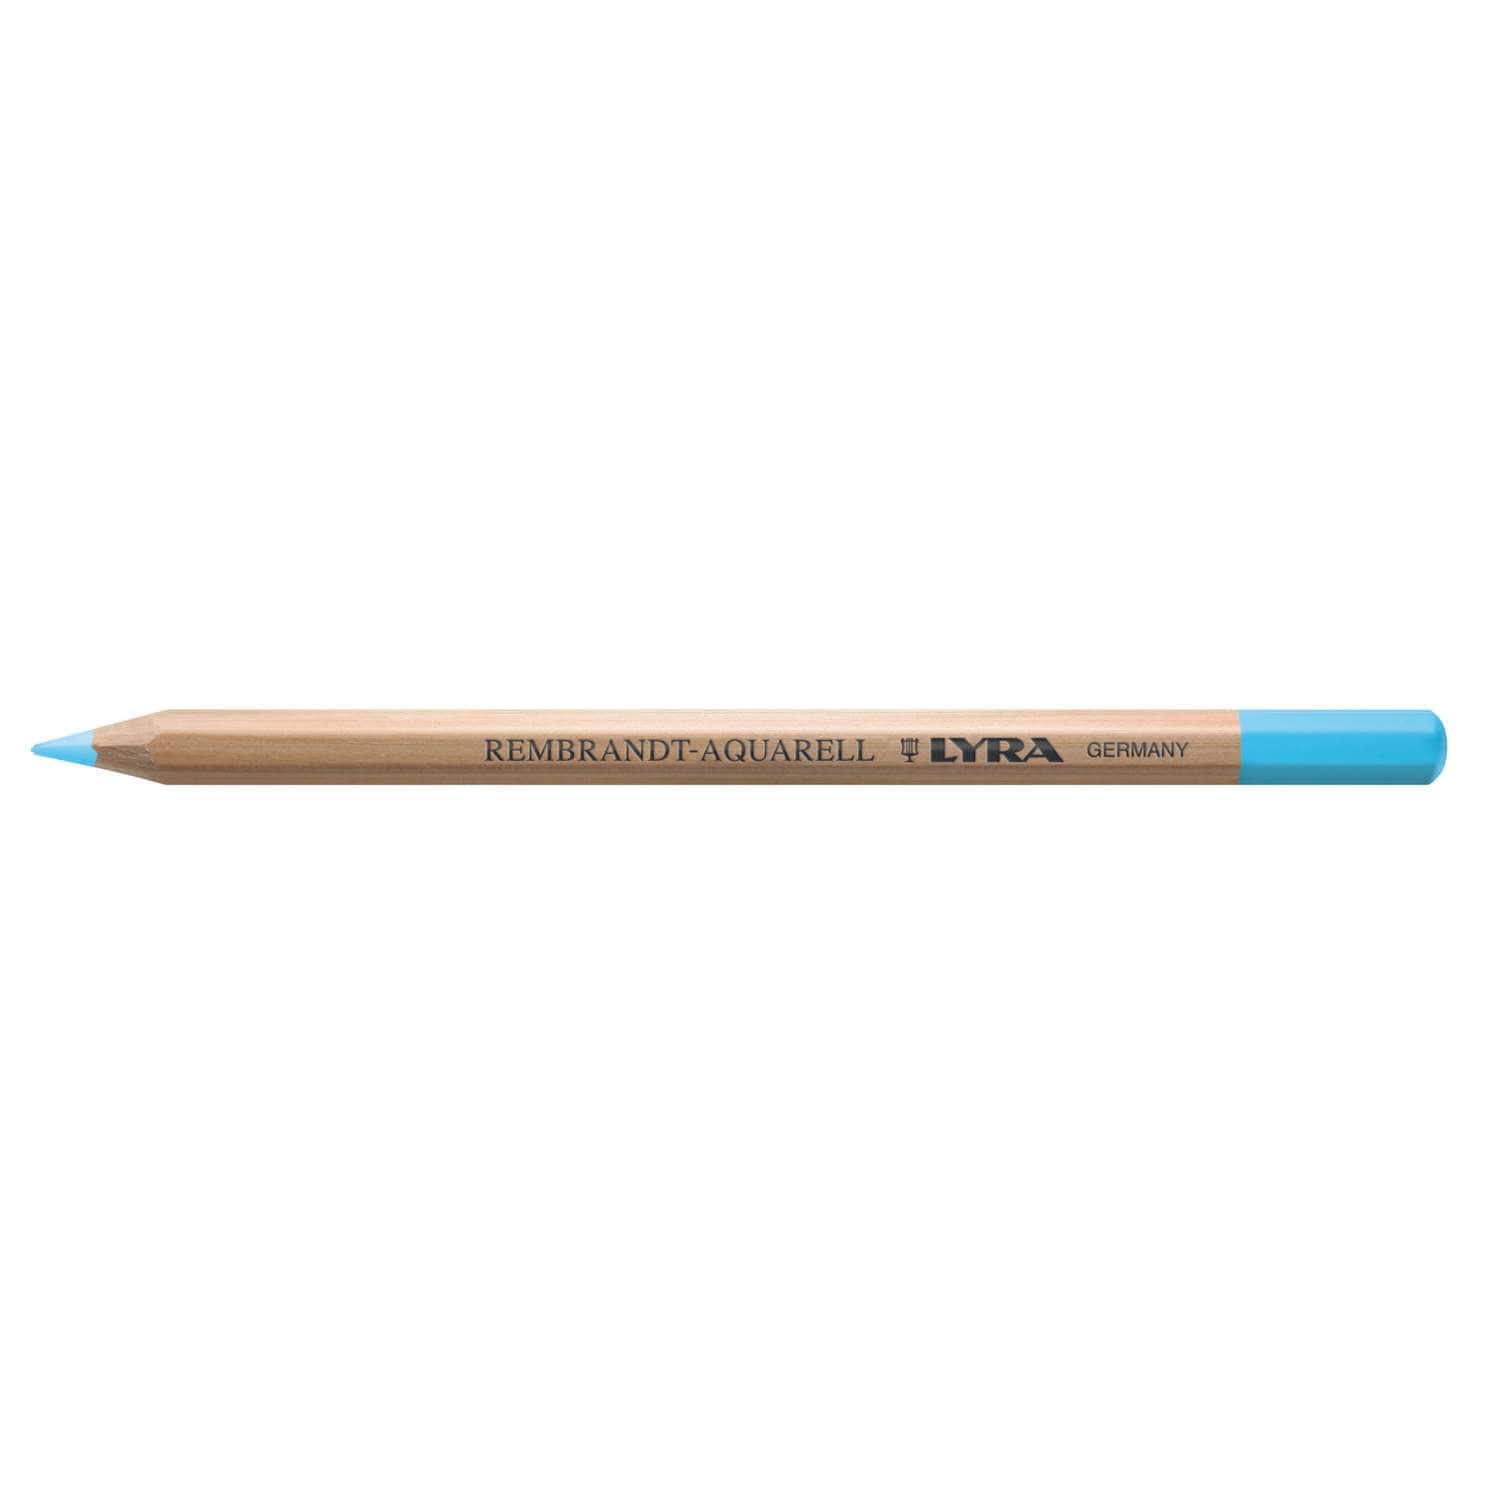 Coffret de crayons de couleur Lyra  Le Géant des Beaux-Arts - N°1 de la  vente en ligne de matériels pour Artistes